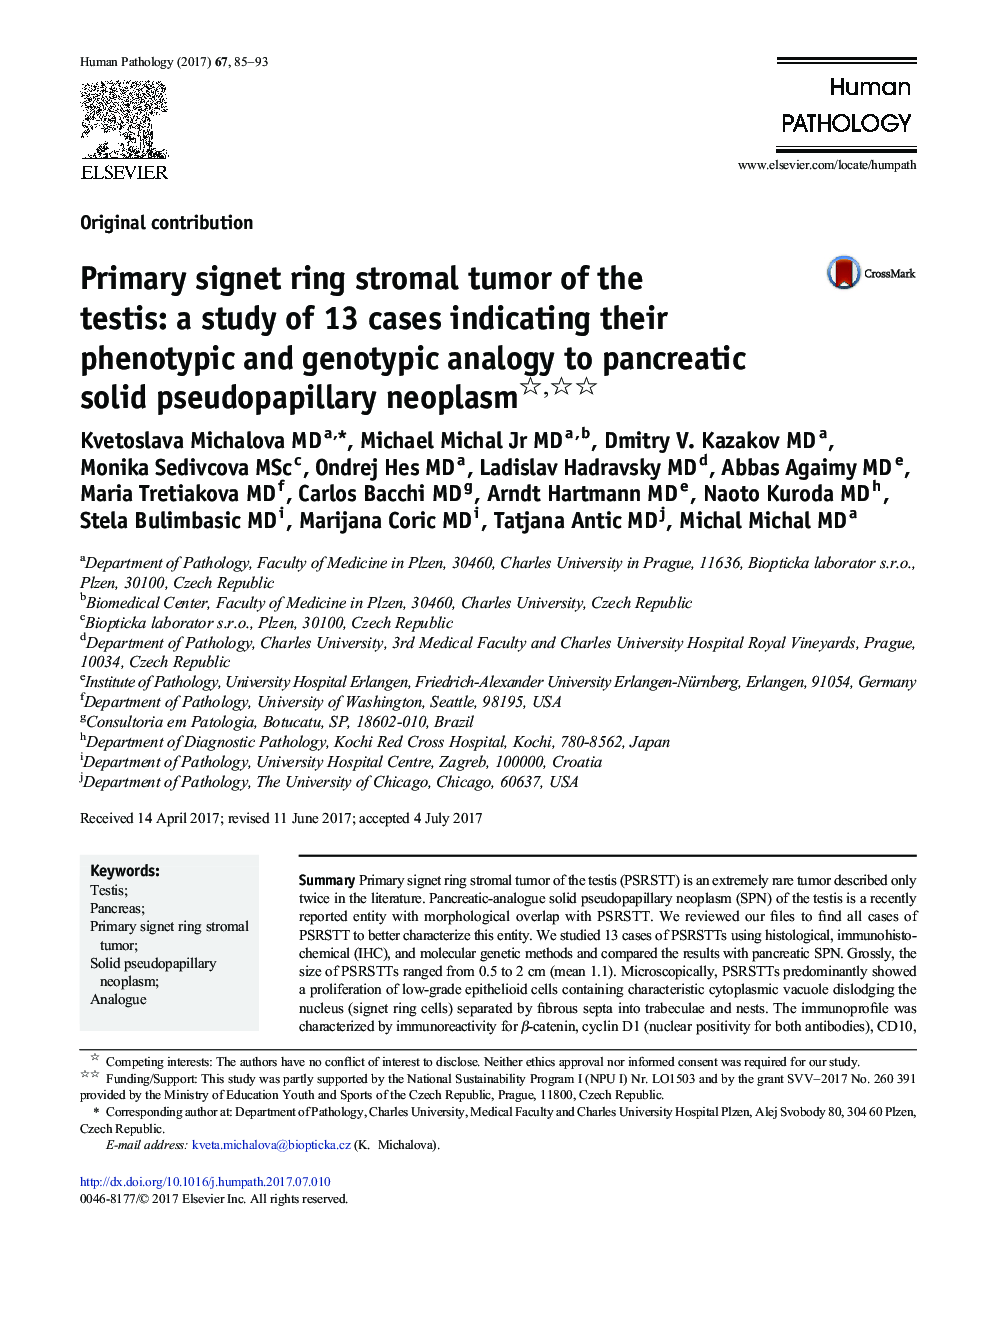 مقاله اصلی: تومور استرومائی حلقوی علامت زنجیره ای بیضه: مطالعه ای از 13 مورد نشان می دهد که آنالیز فنوتیپی و ژنوتیپی آنها به نئوپلاستیک شبه پاپیلر جامد پانکراس 